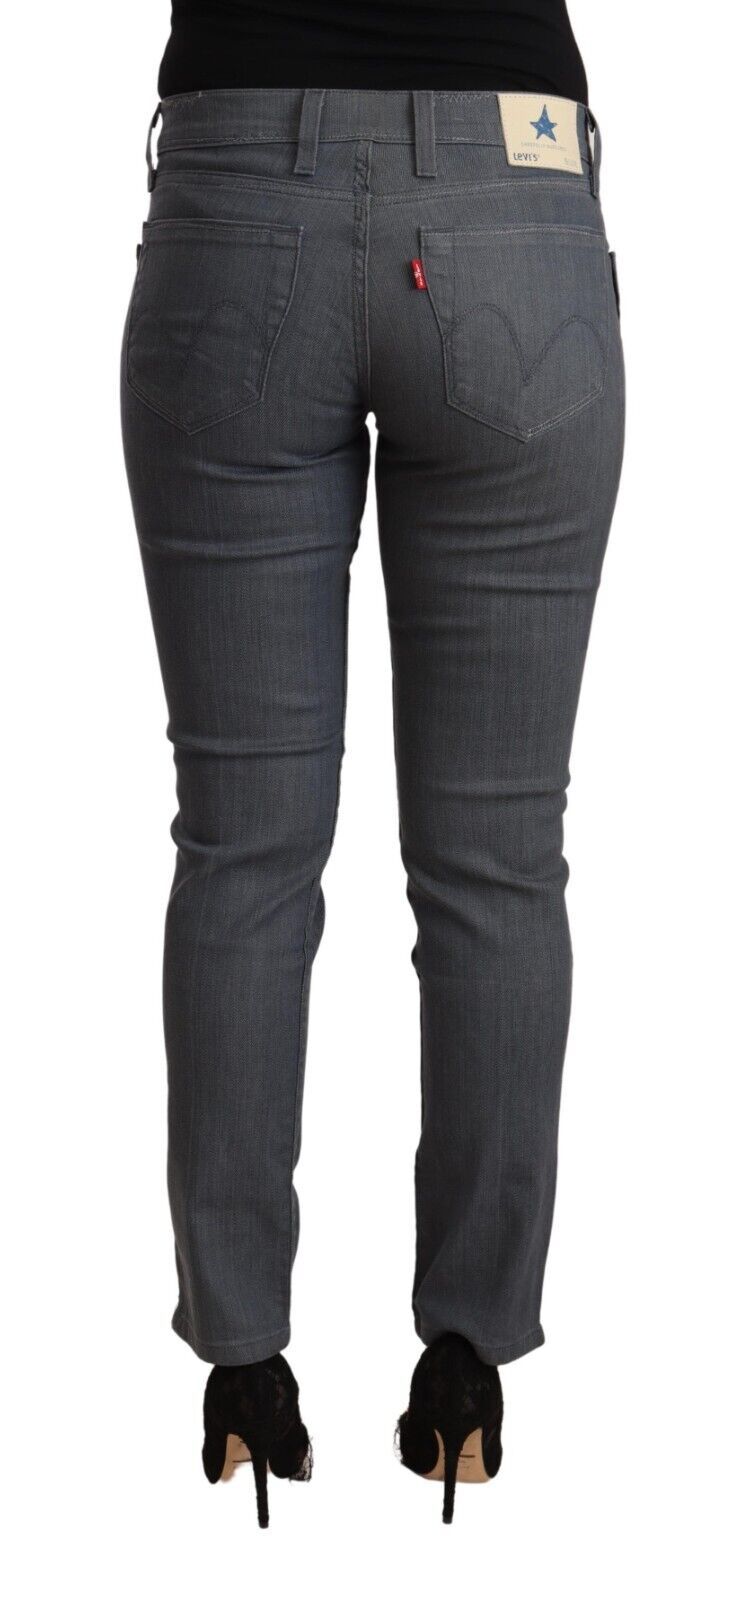 Levi's Gray Cotton Low Waist Skinny Denim Jeans